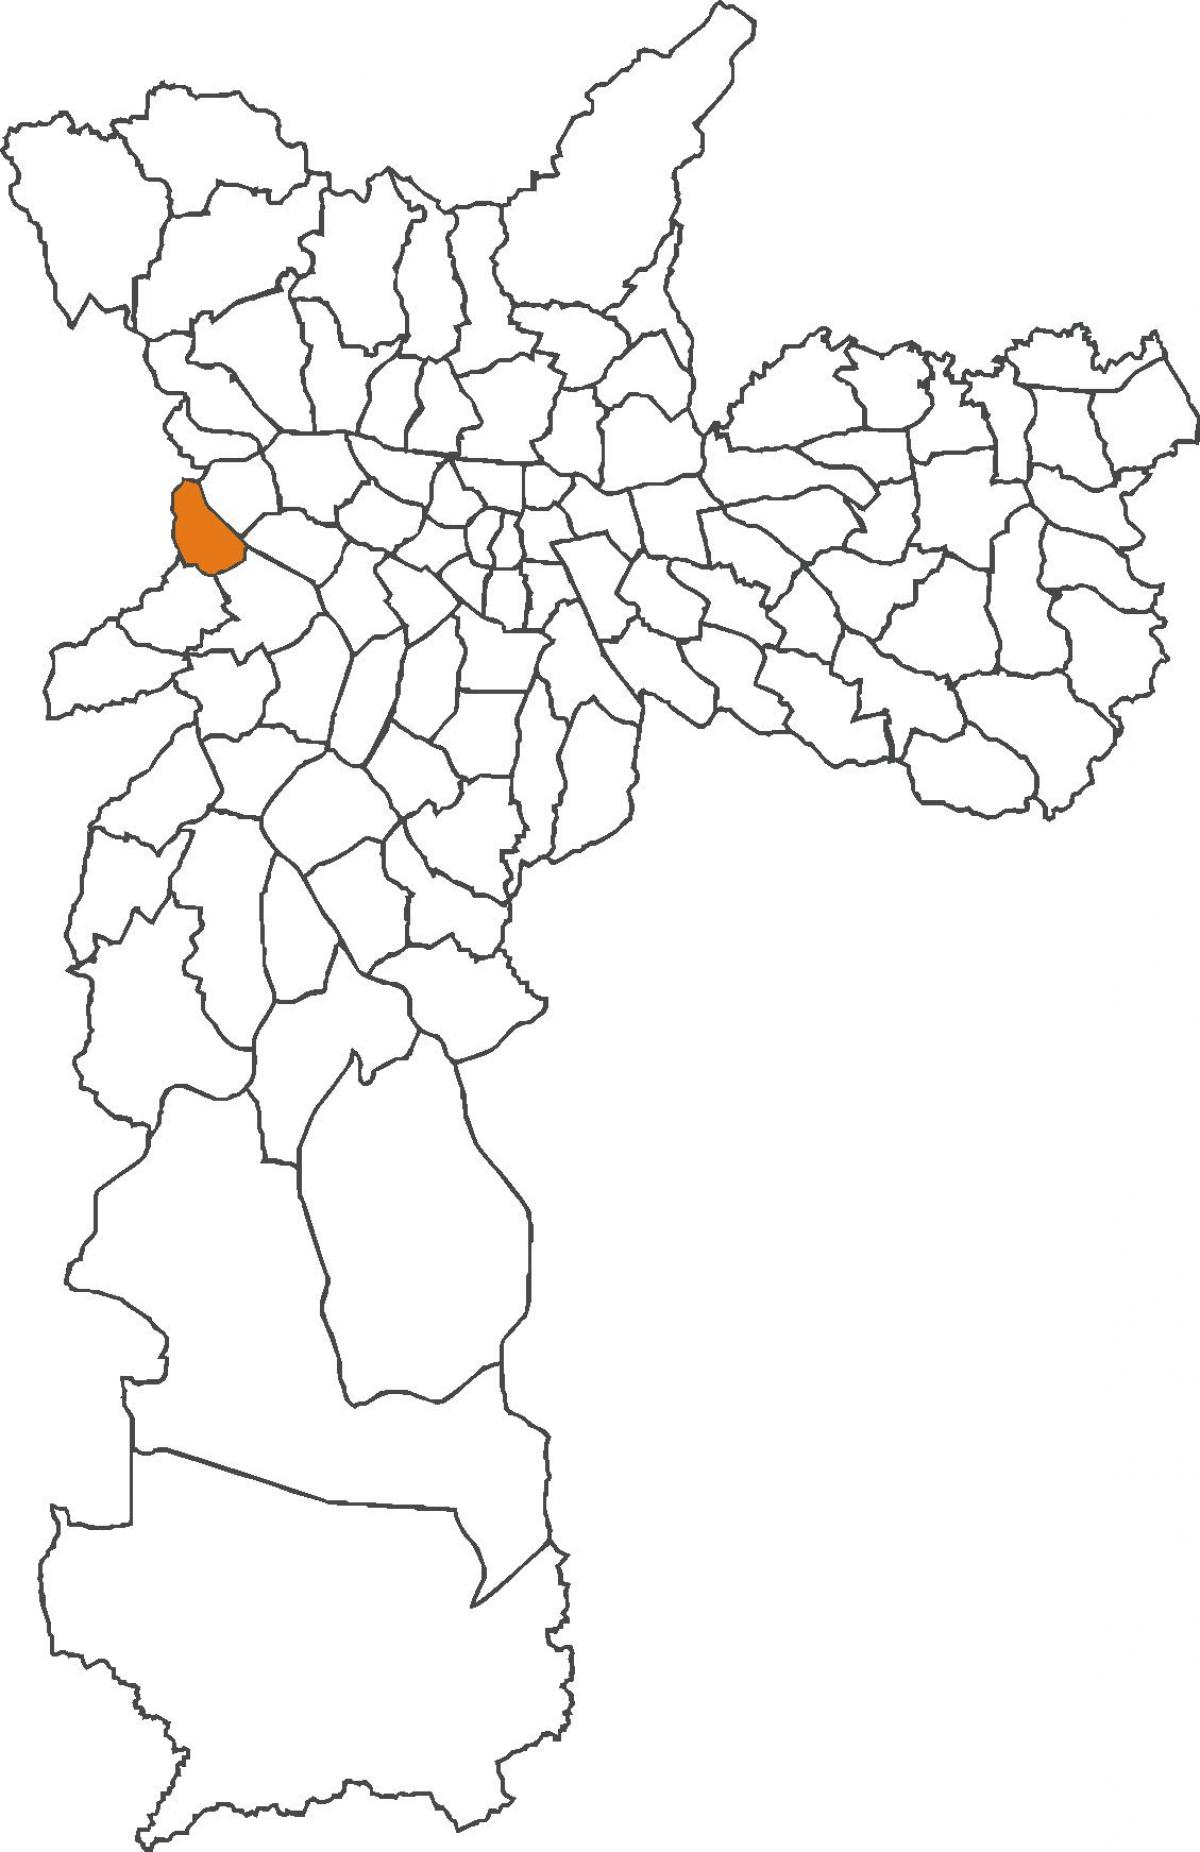 Peta Jaguaré daerah